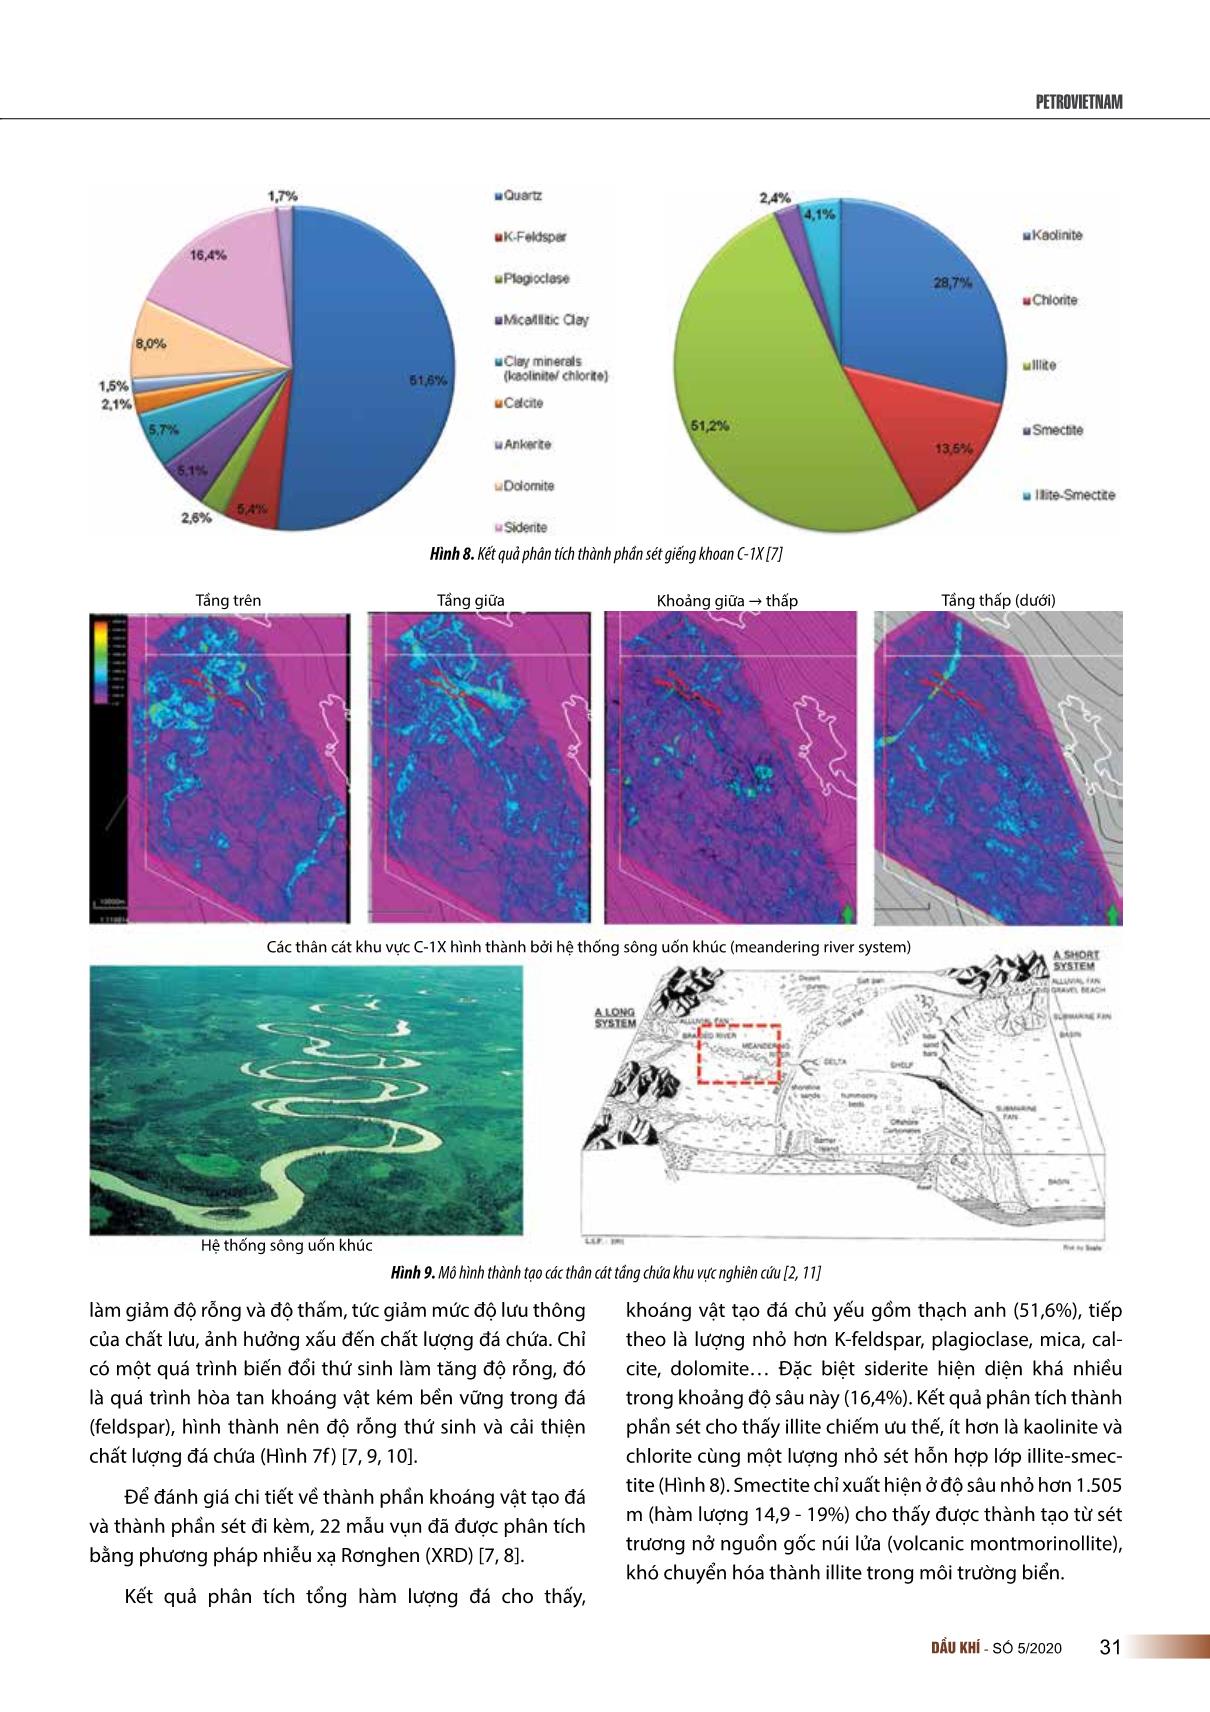 Đặc điểm hệ thống dầu khí khu vực rìa Tây Nam bể trầm tích Malay - Thổ chu, Việt Nam trang 7